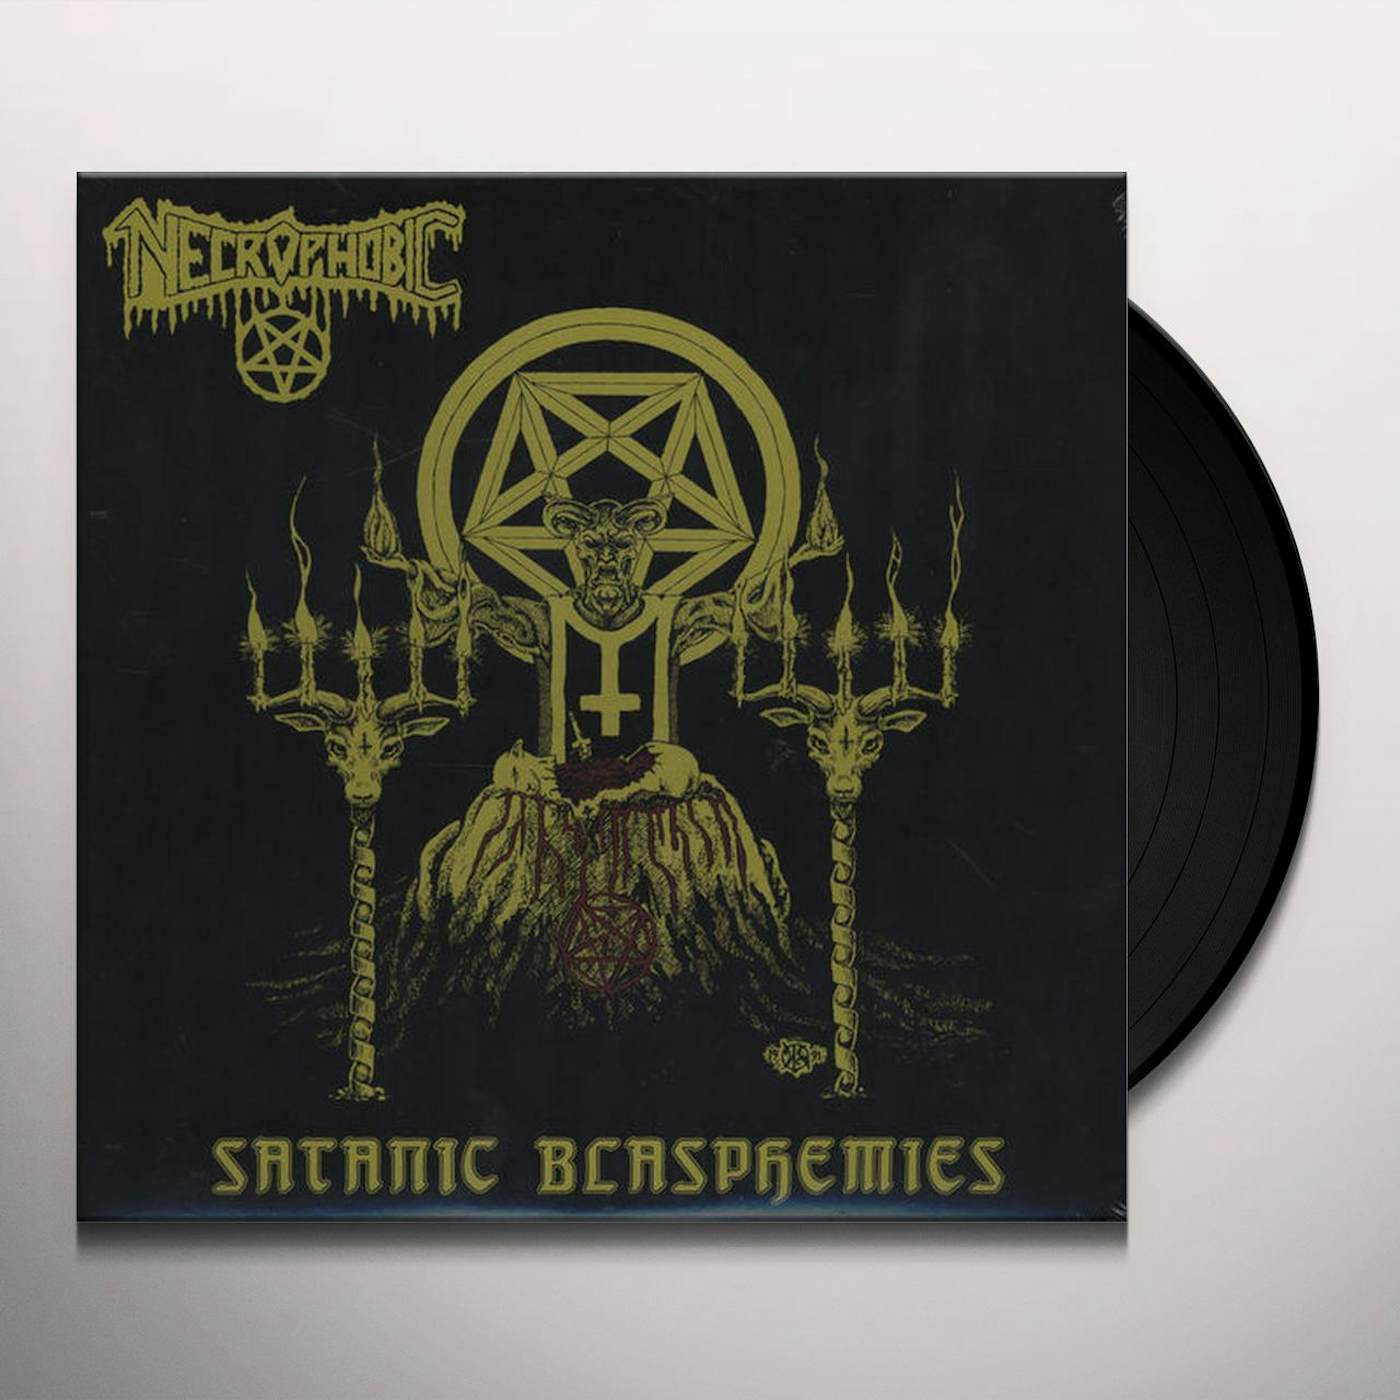 Necrophobic Satanic Blasphemies Vinyl Record